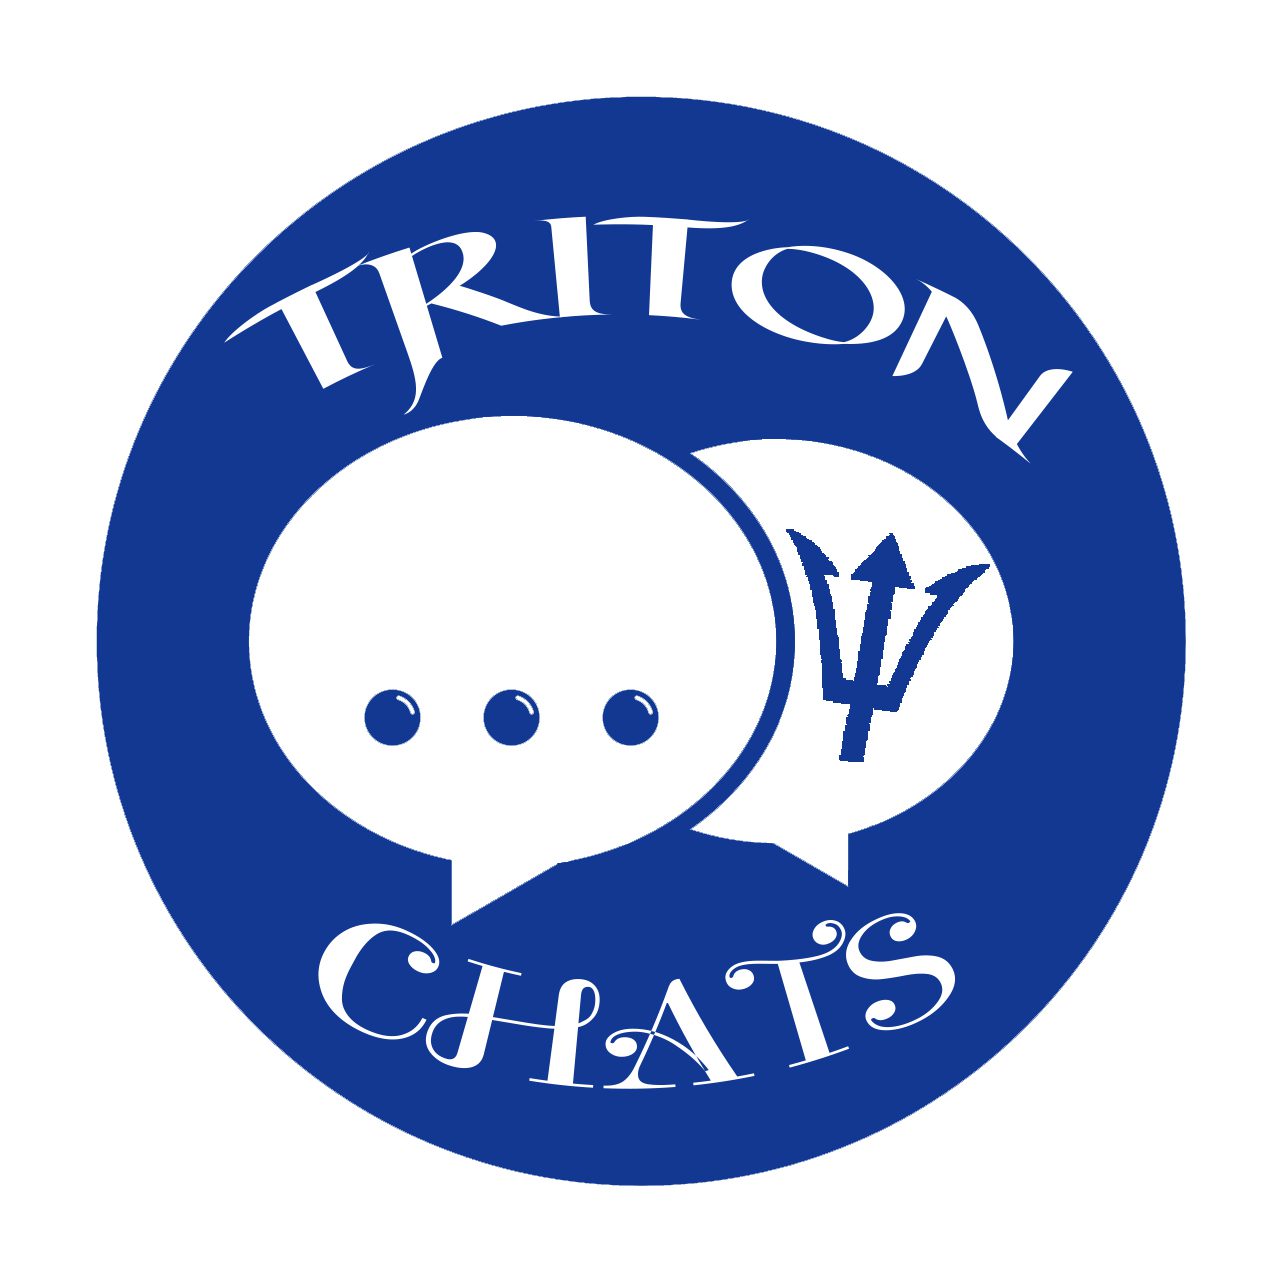 TritonChats